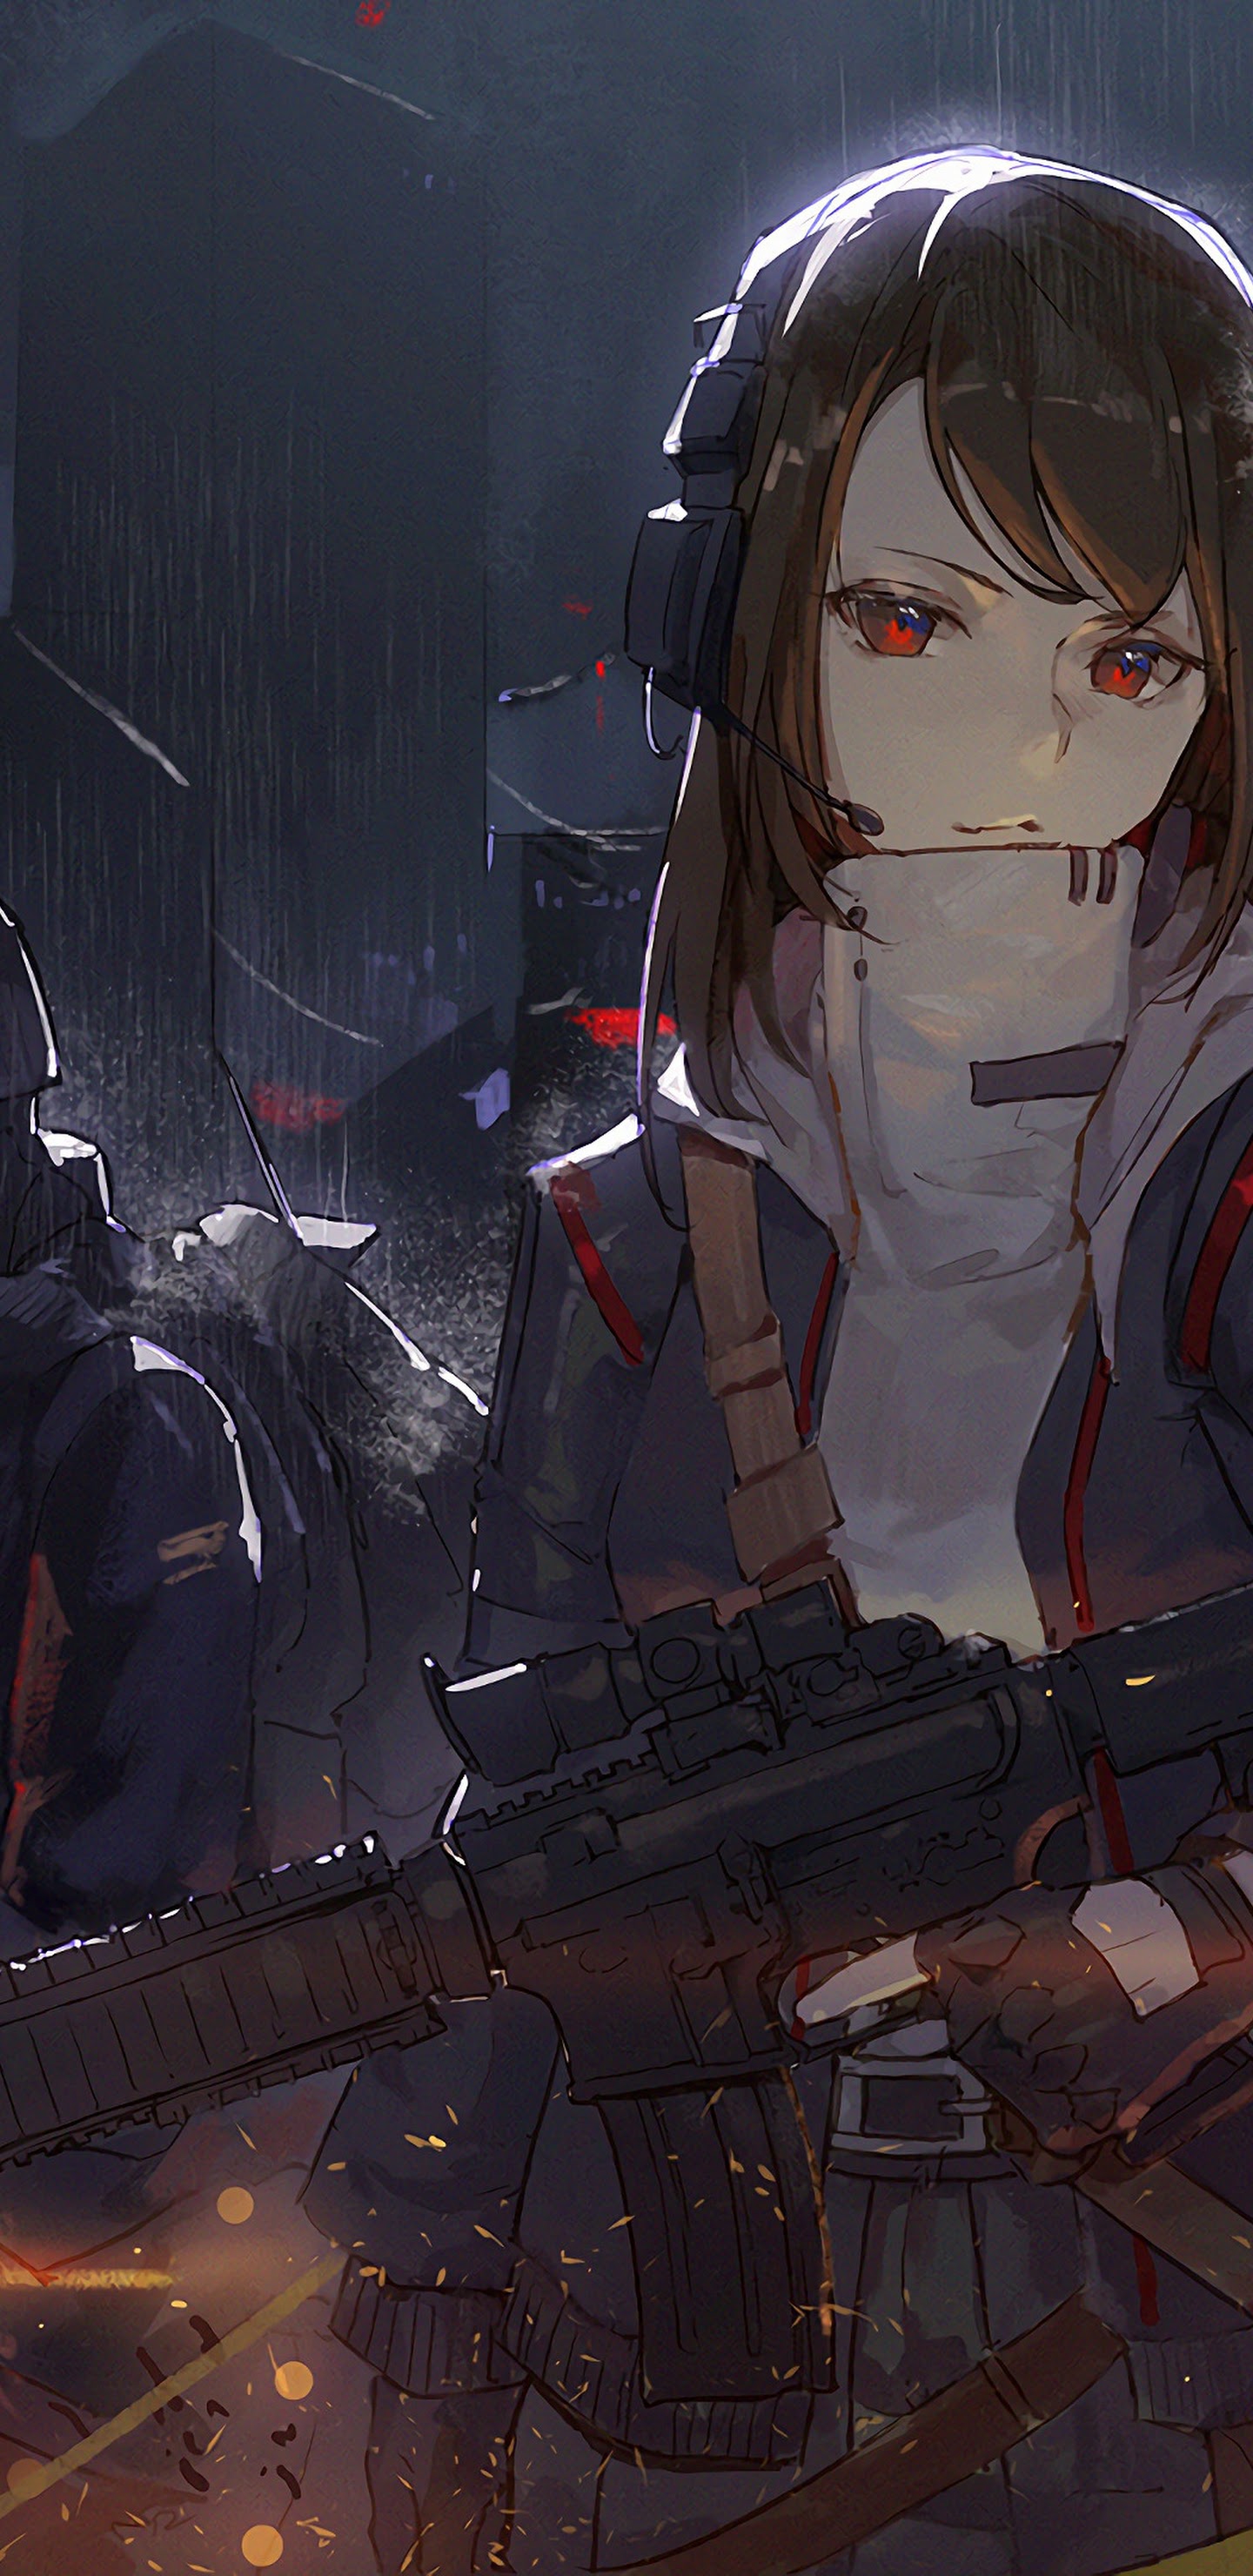 Anime Girl Soldier 4k 3840x2160 Wallpaper 19